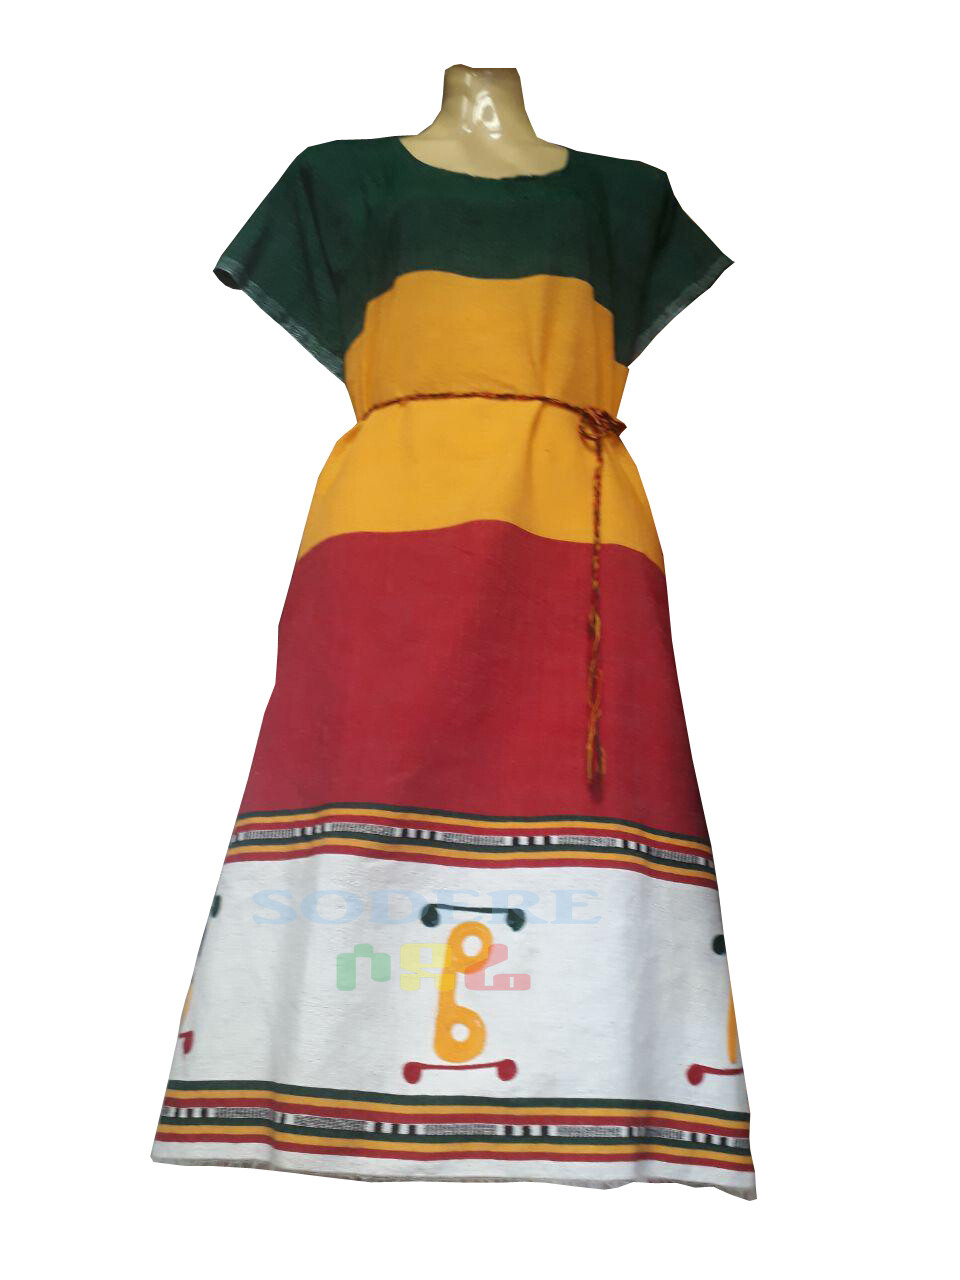 የኢትዮጵያ ባንዲራ ያለው የሴቶች አጓጉል ቀሚስ Ethiopian Women Dress / free size